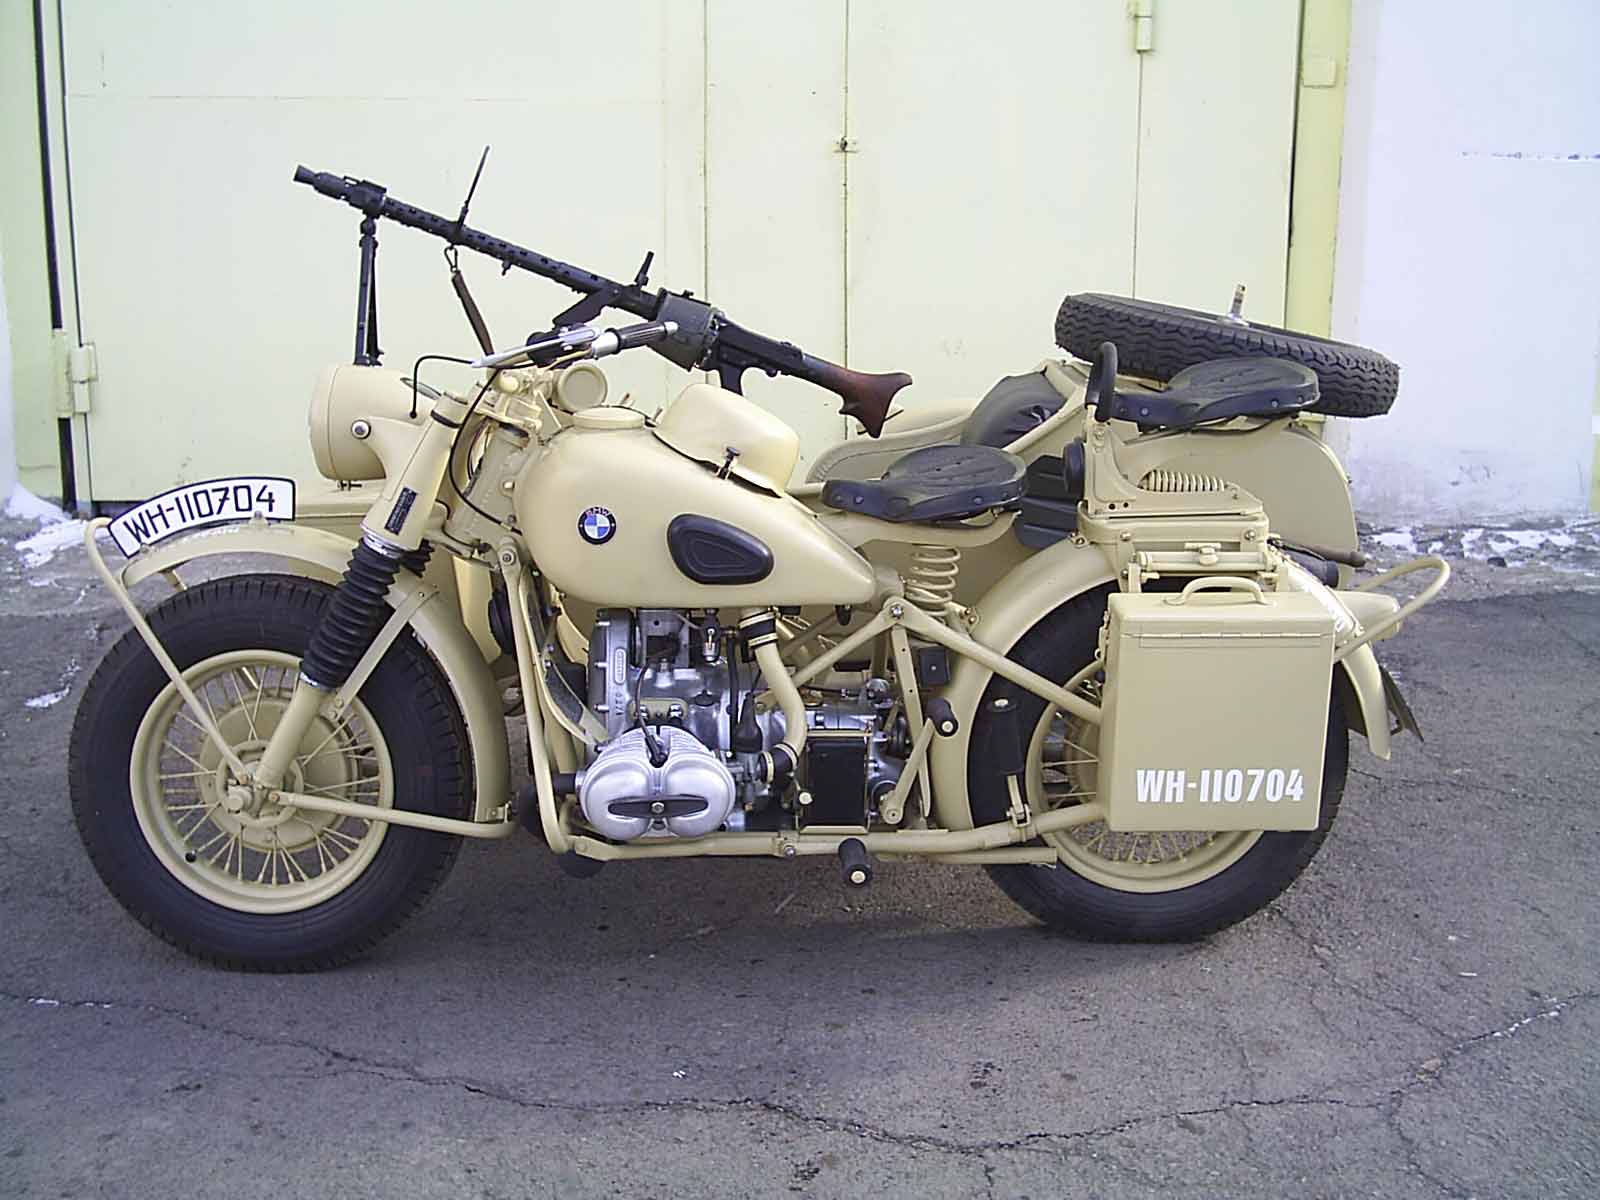 мотоцикл bmw времен войны